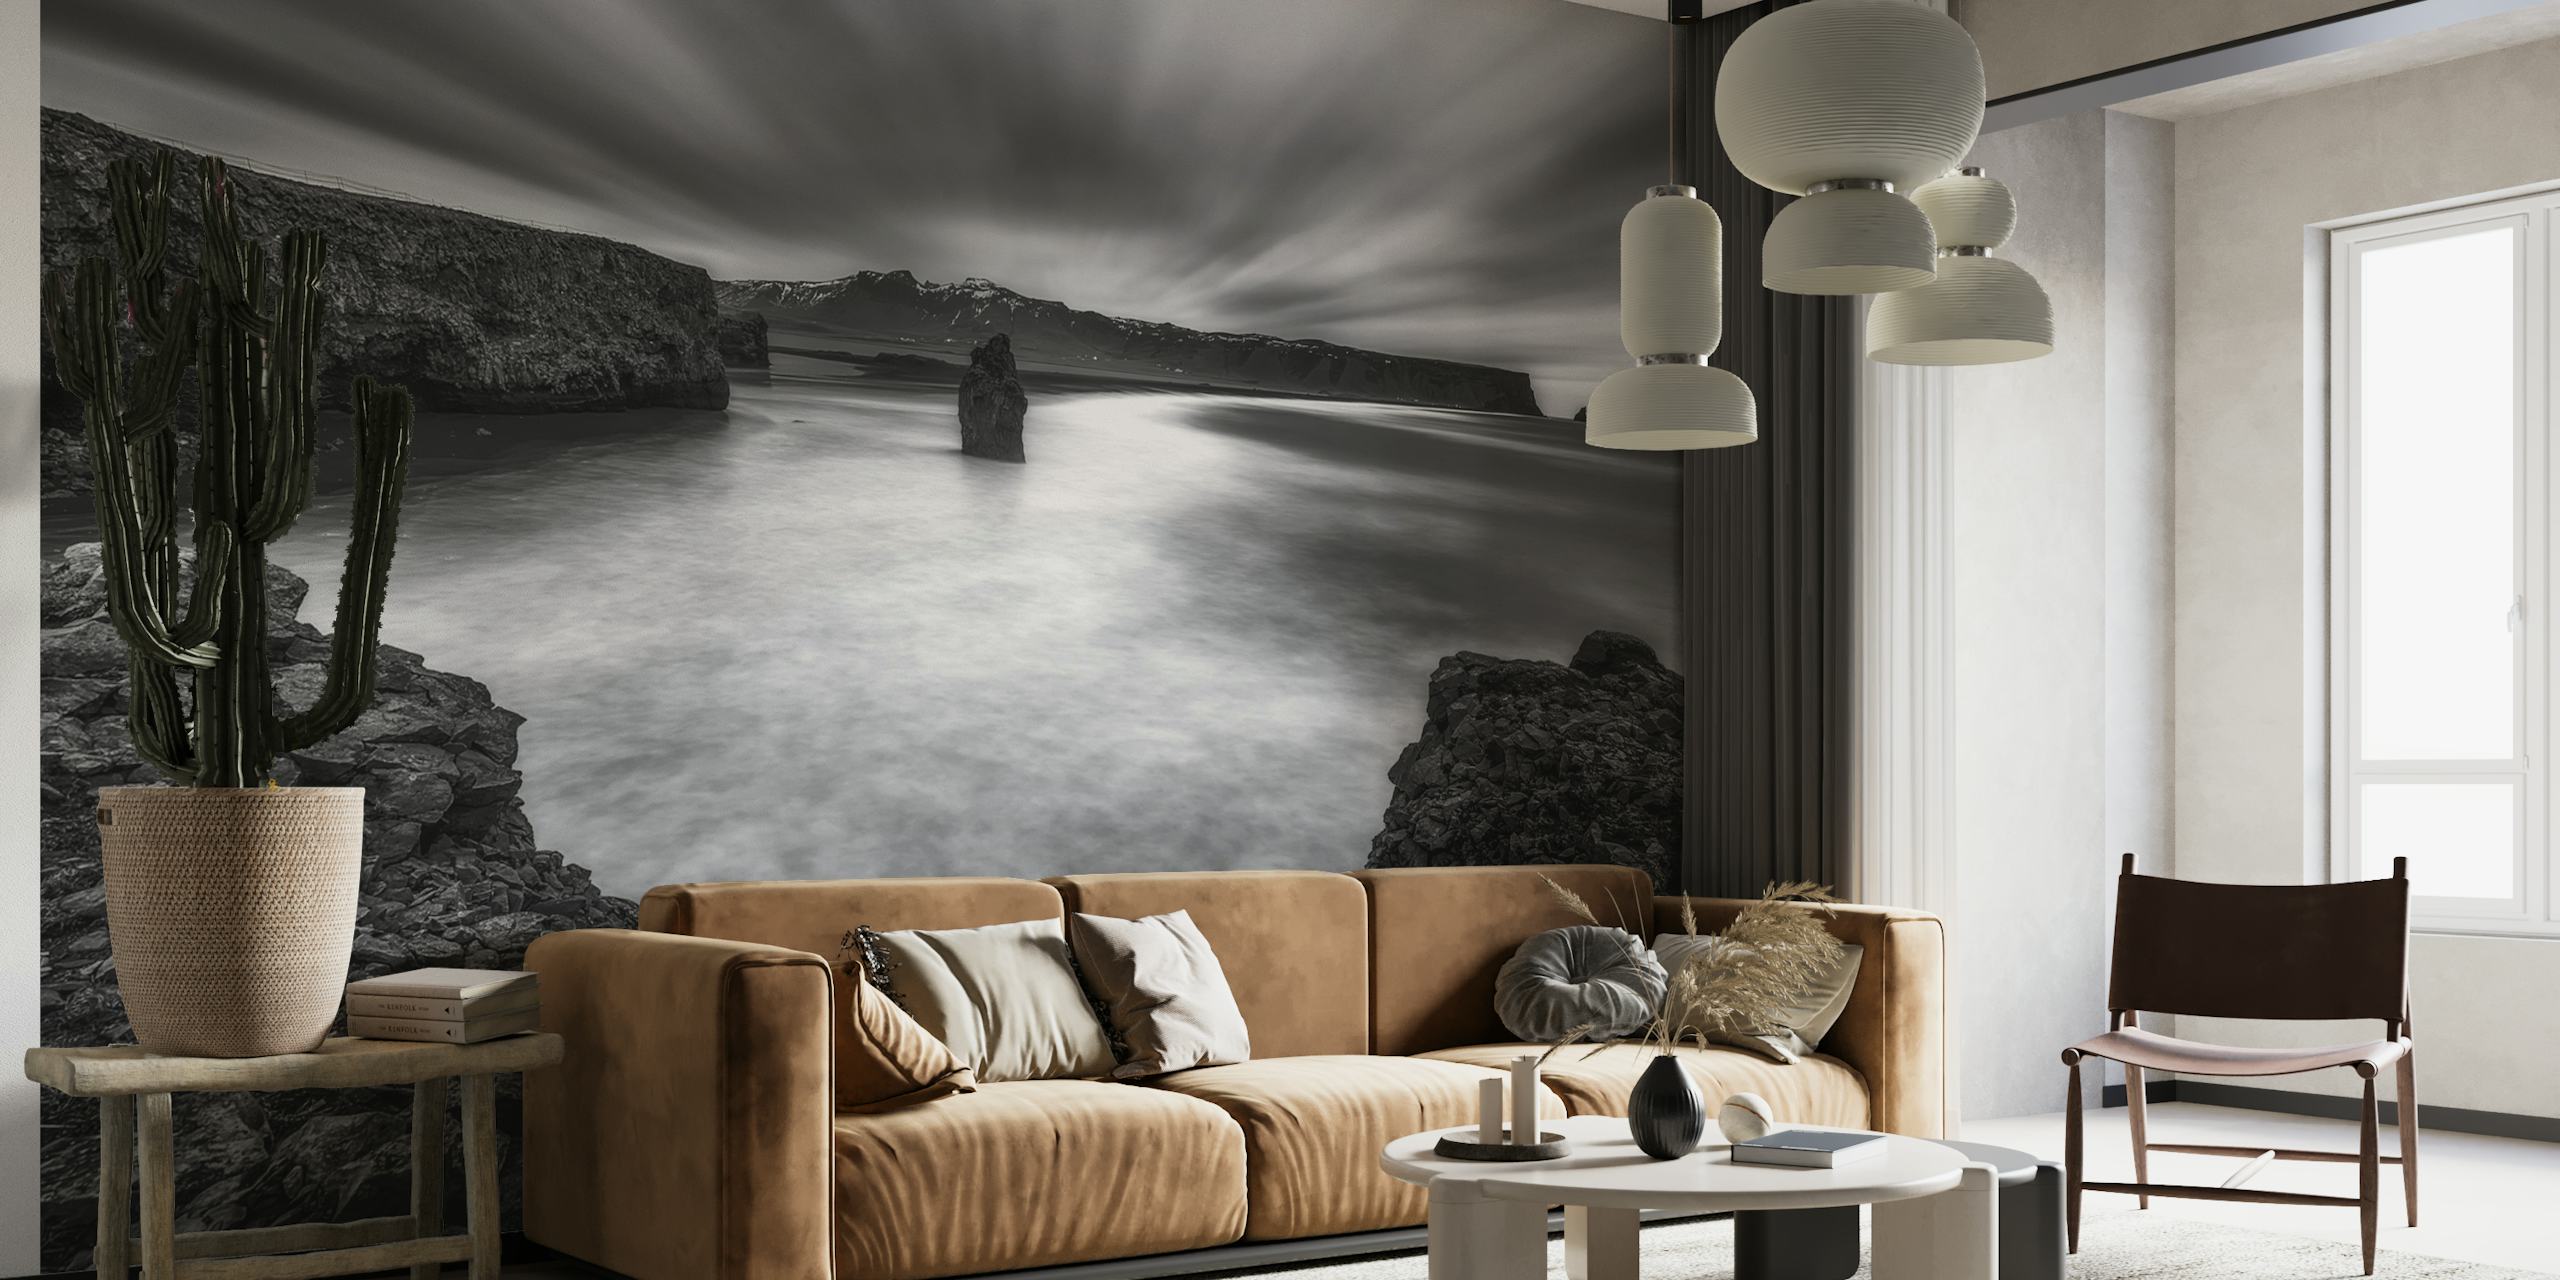 Mural de parede em preto e branco representando nuvens dinâmicas e um corpo de água tranquilo à beira de um penhasco